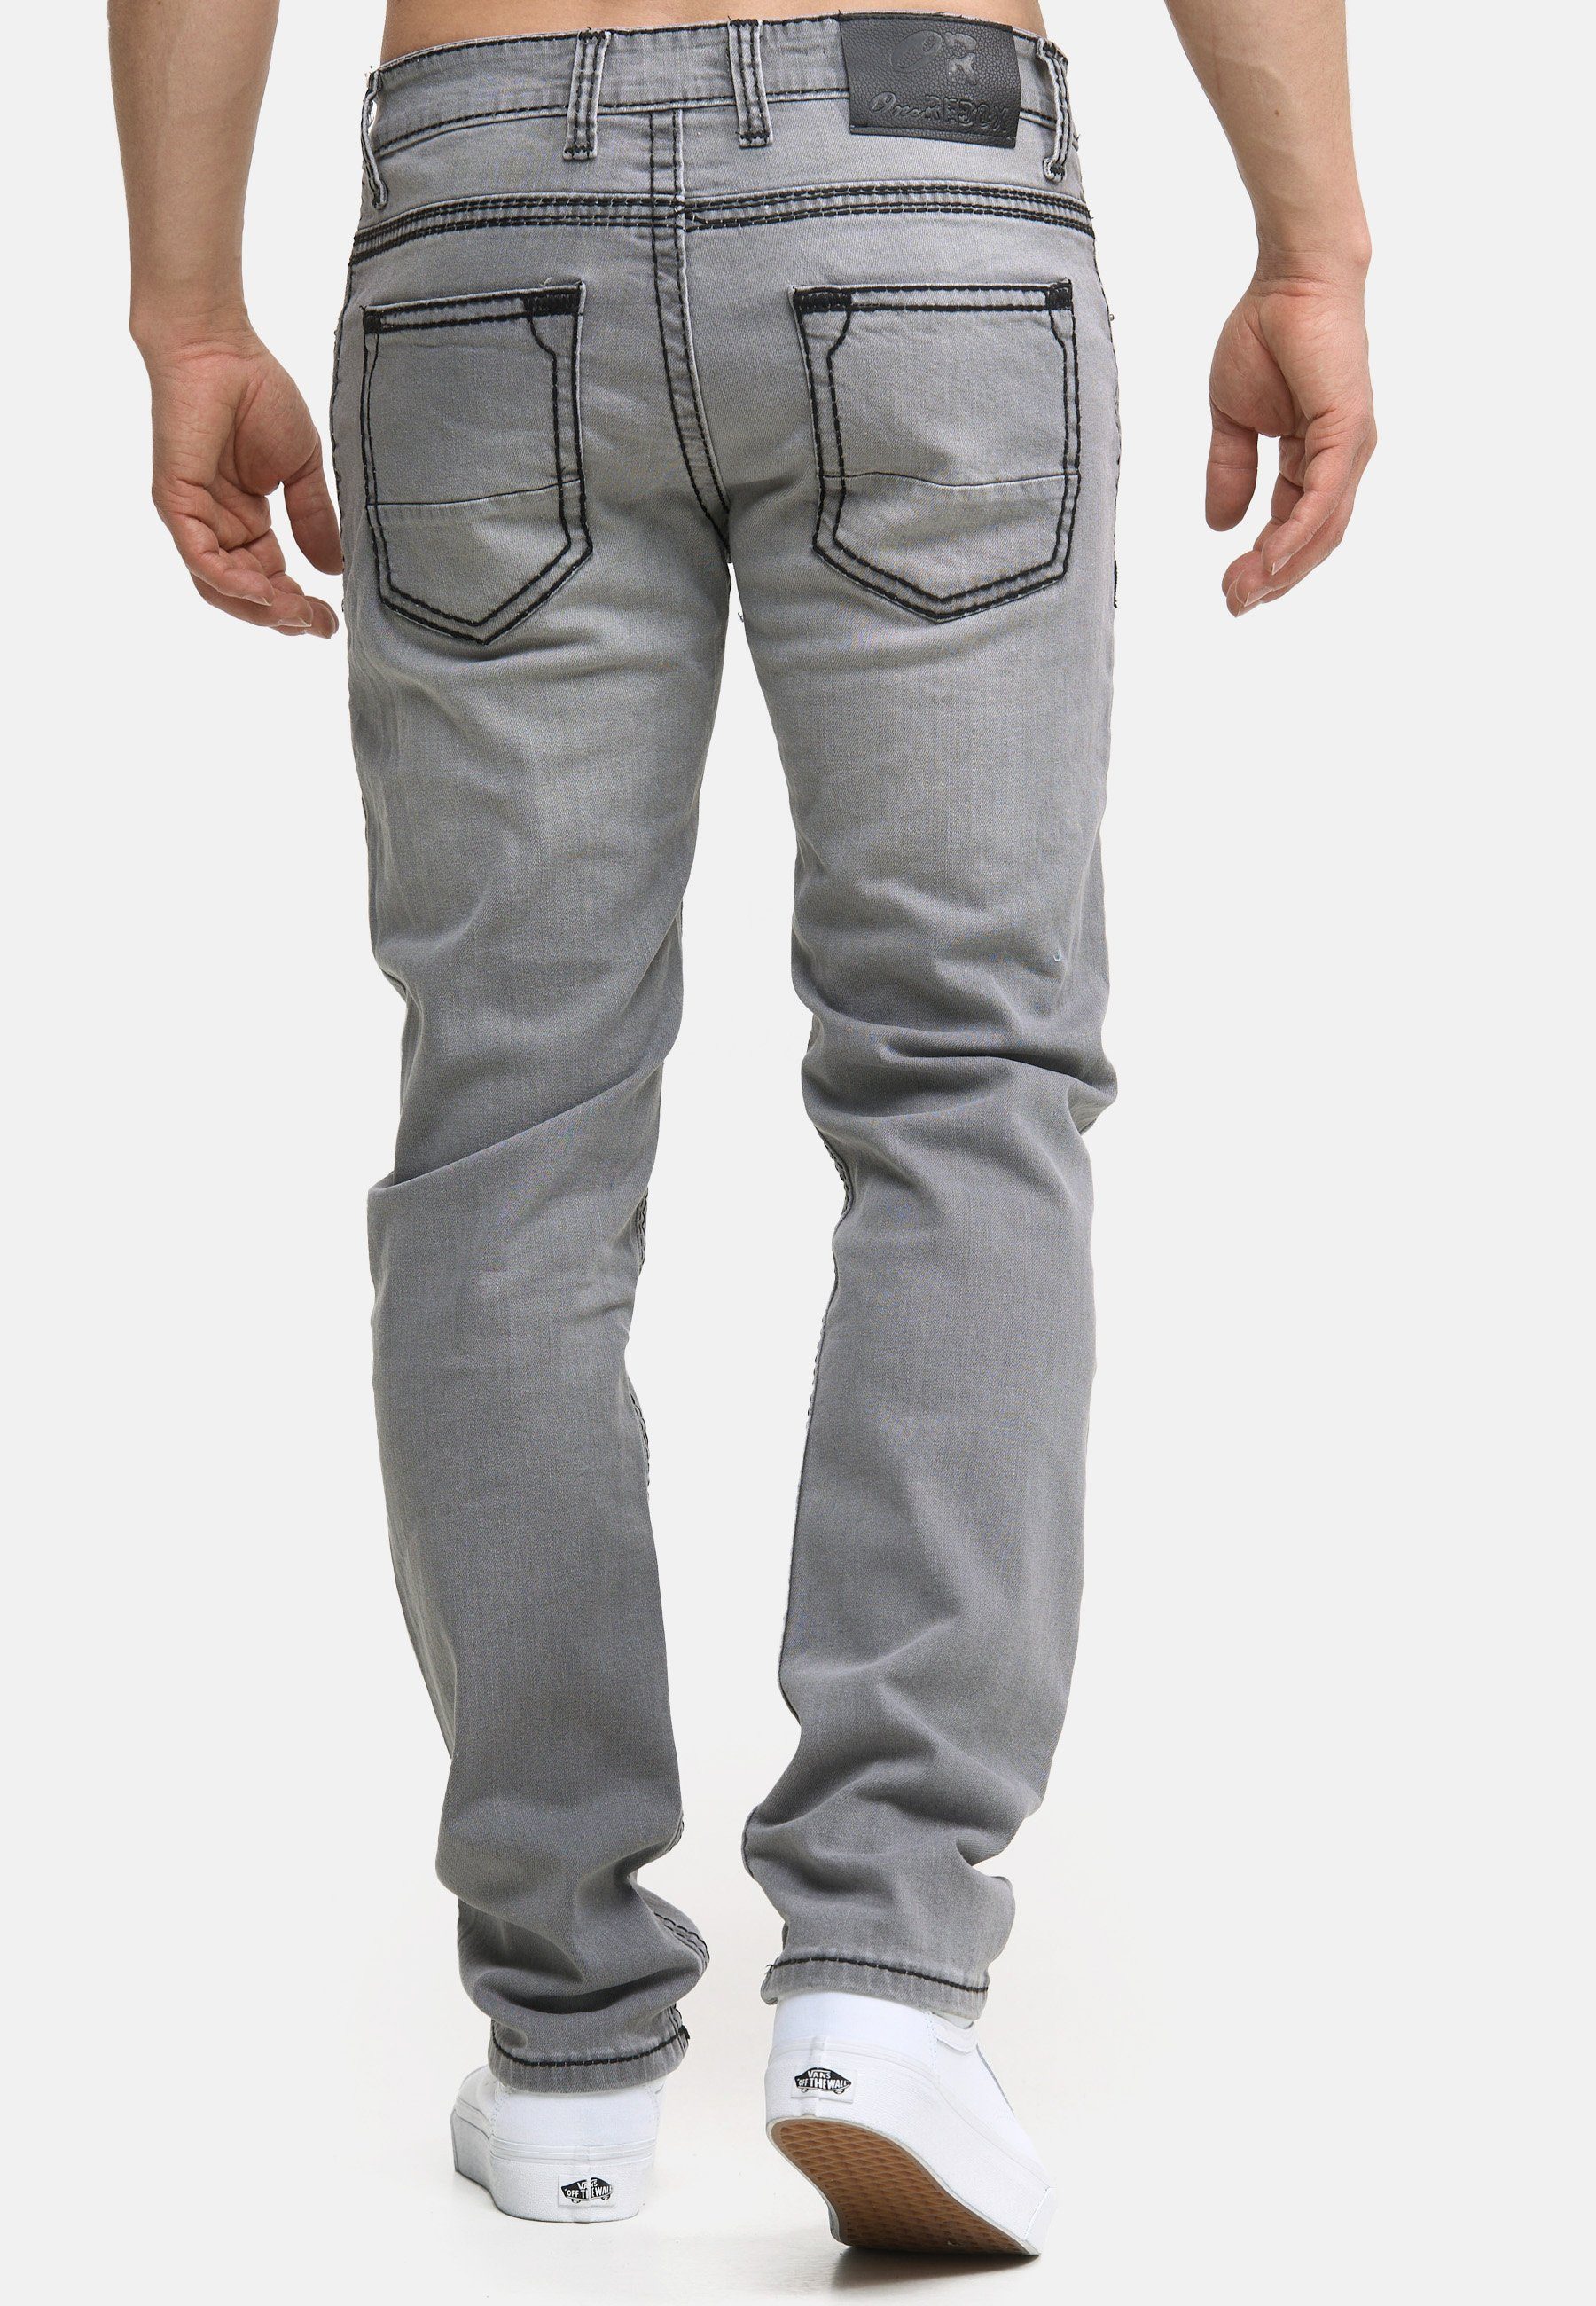 Regular Hose Männer Code47 grey Pocket Bootcut 903 Five Code47 Regular-fit-Jeans Jeans Denim Fit Herren